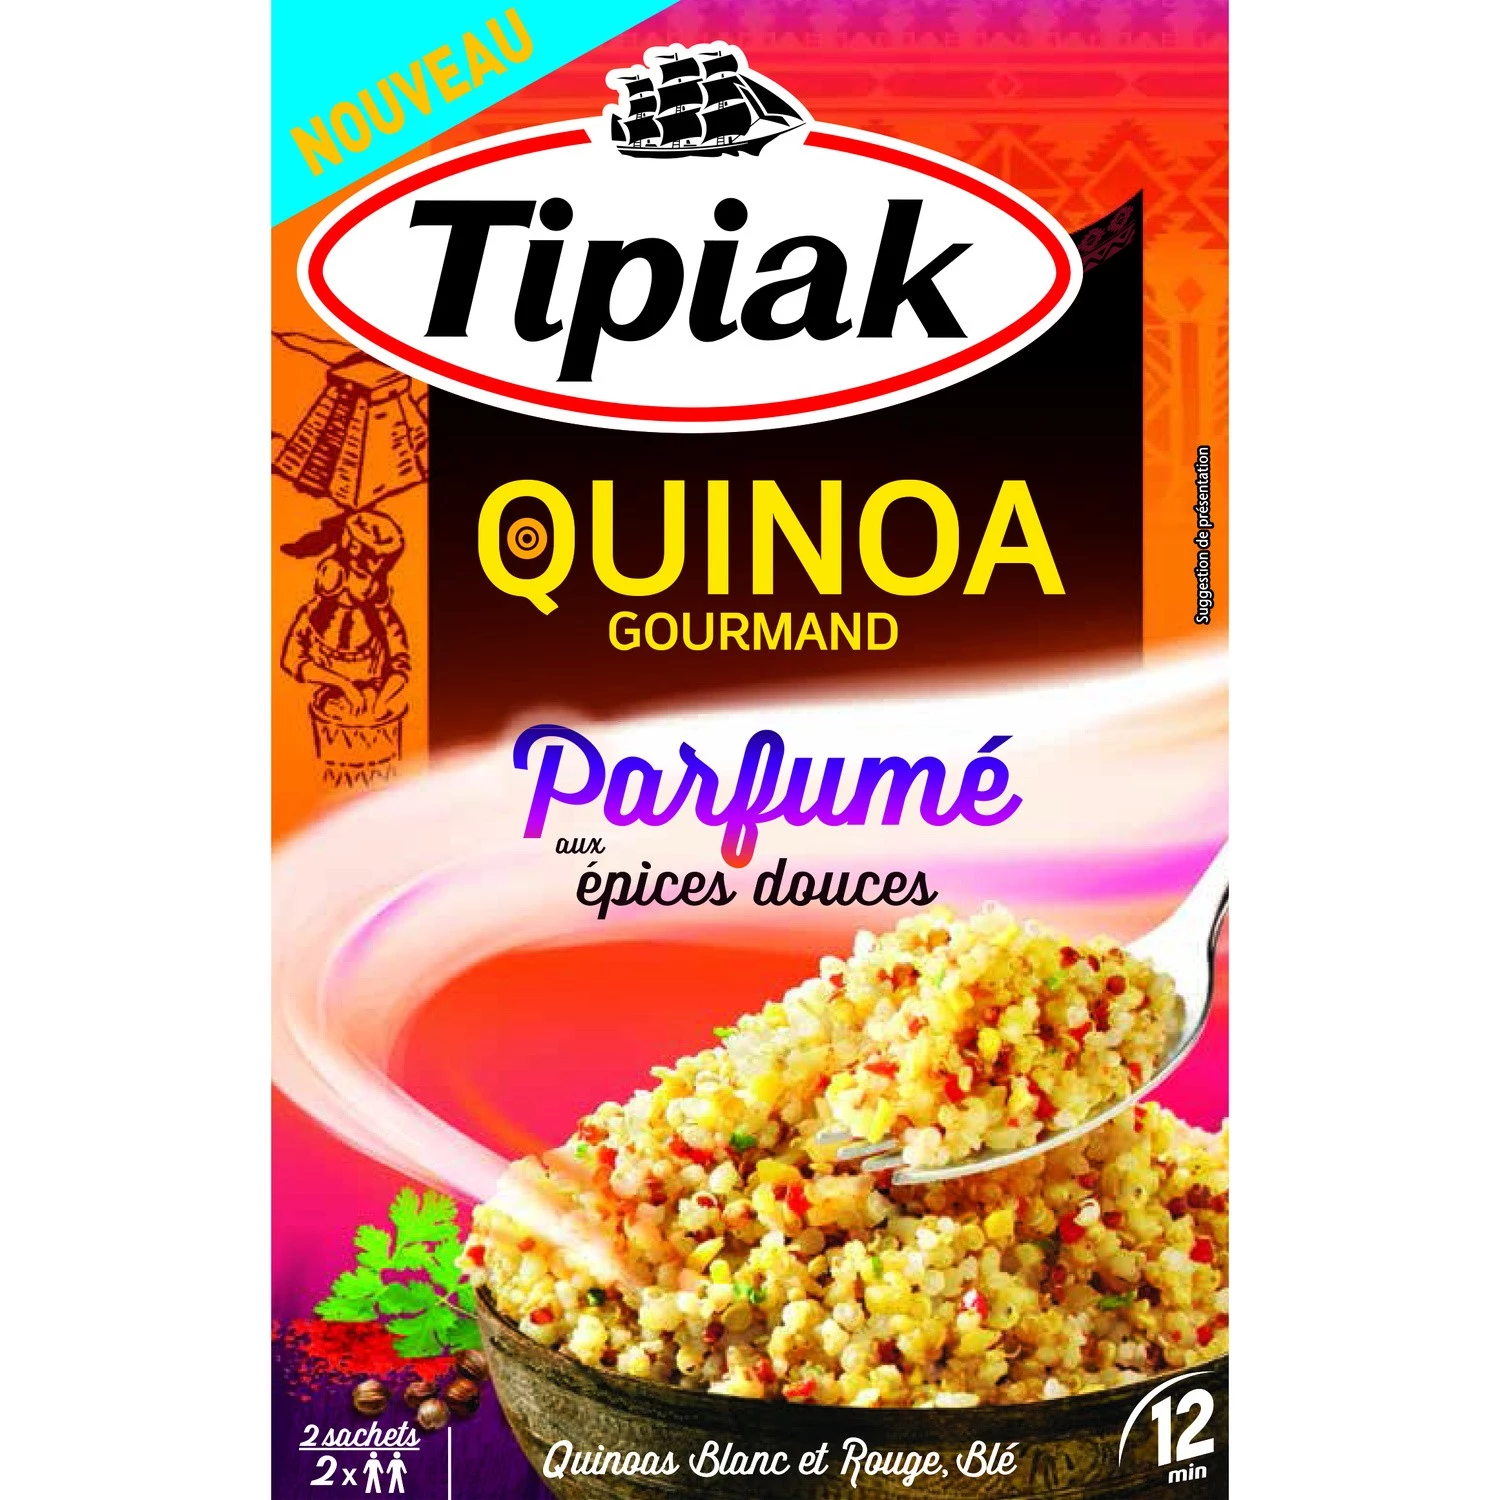 Quinoa gourmet aromatizada com especiarias doces 2x120g - TIPIAK